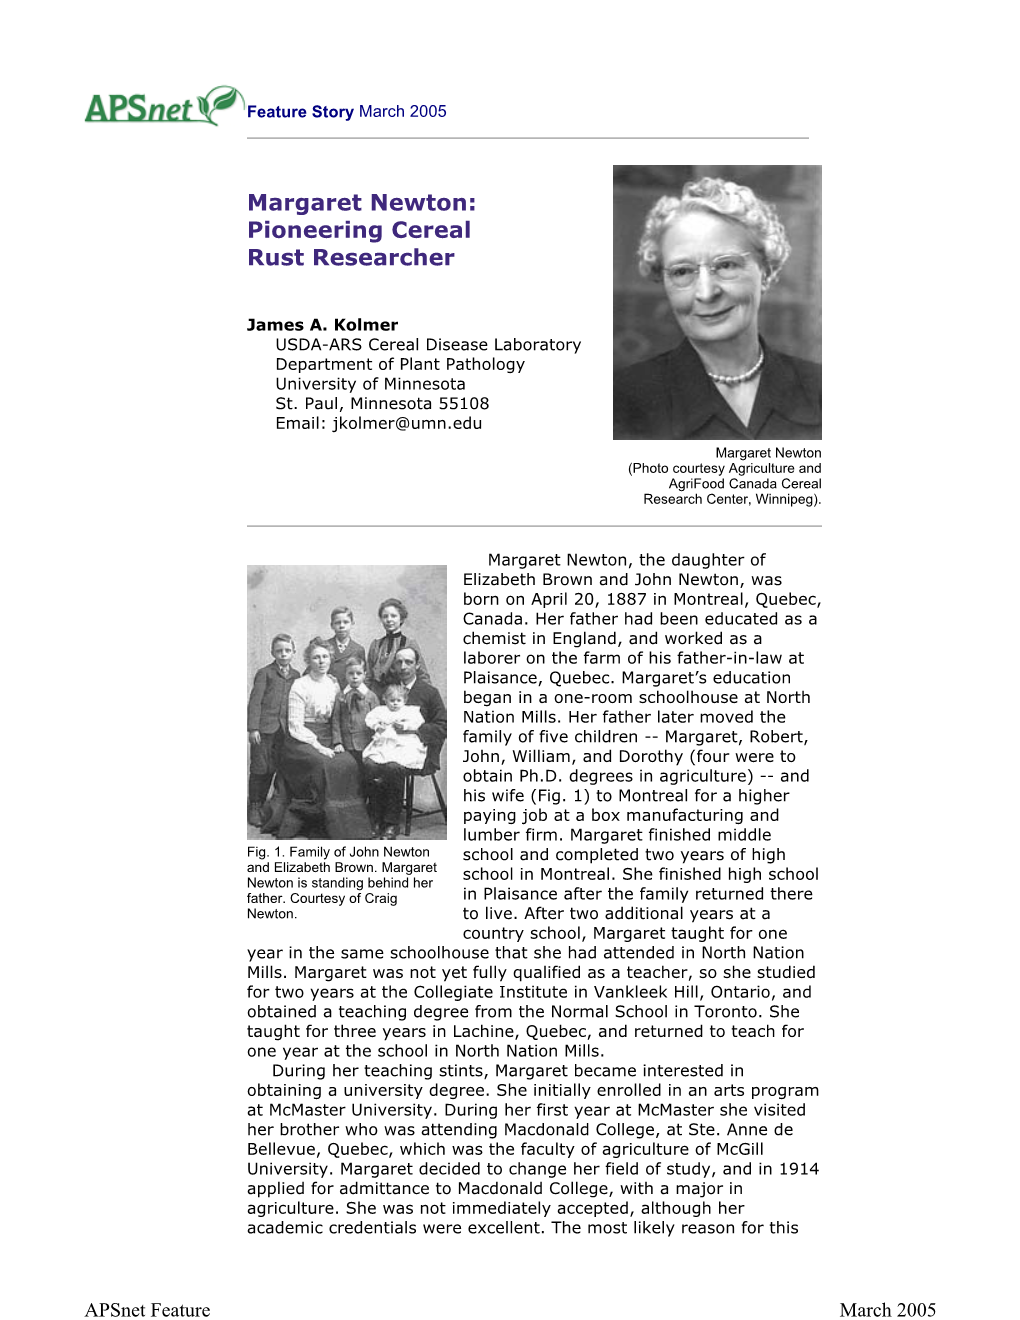 Margaret Newton: Pioneering Cereal Rust Researcher